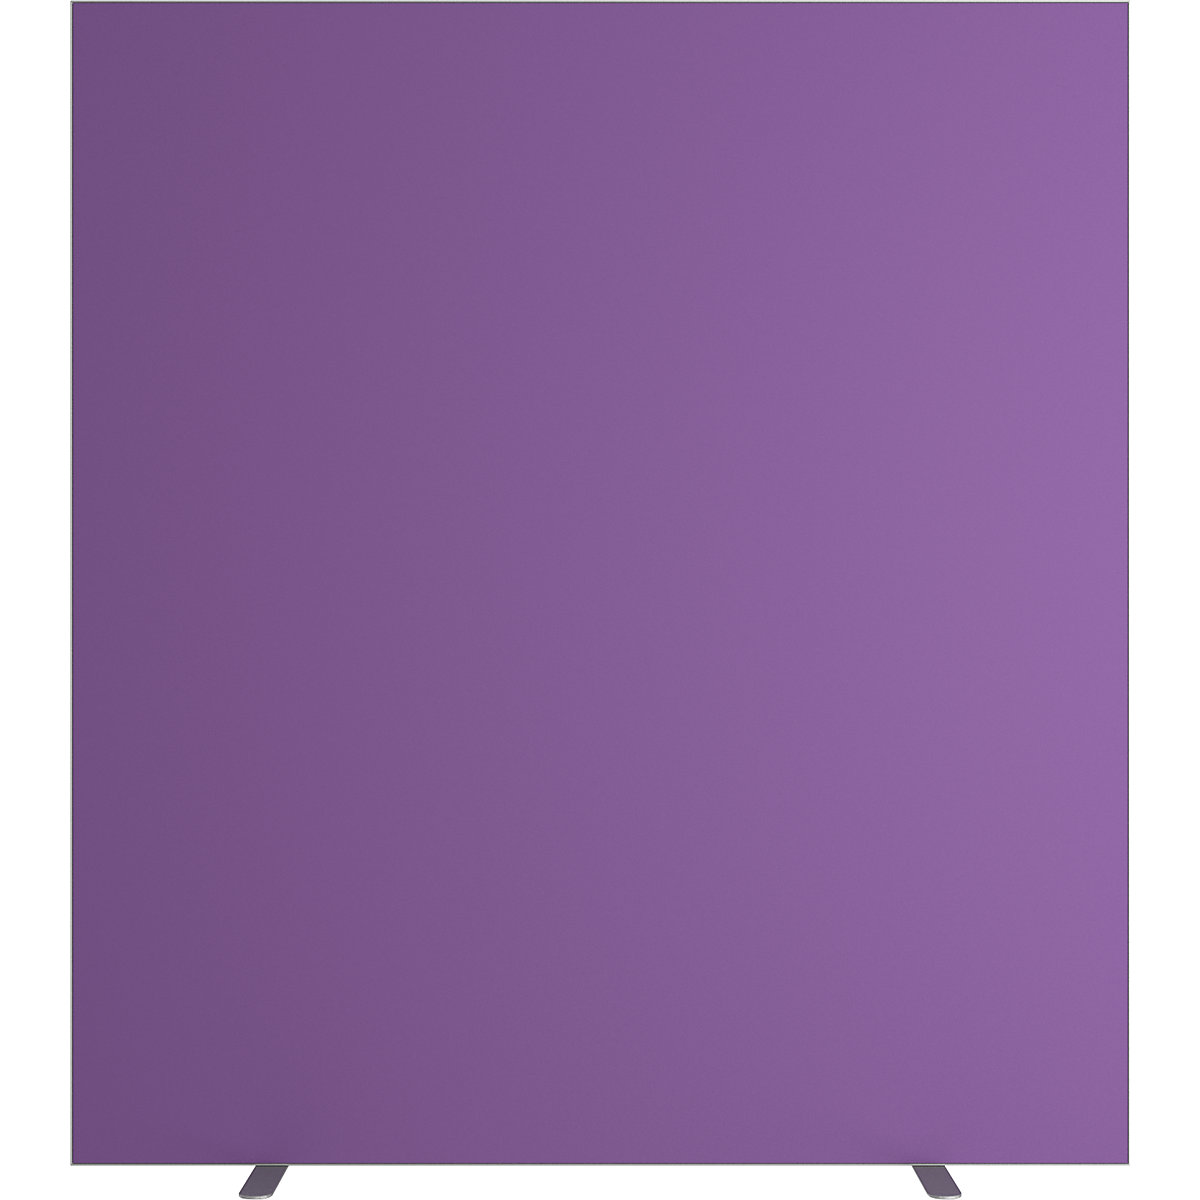 Trennwand easyScreen, einfarbig, mit Schallschutz, lila, Breite 1600 mm-16